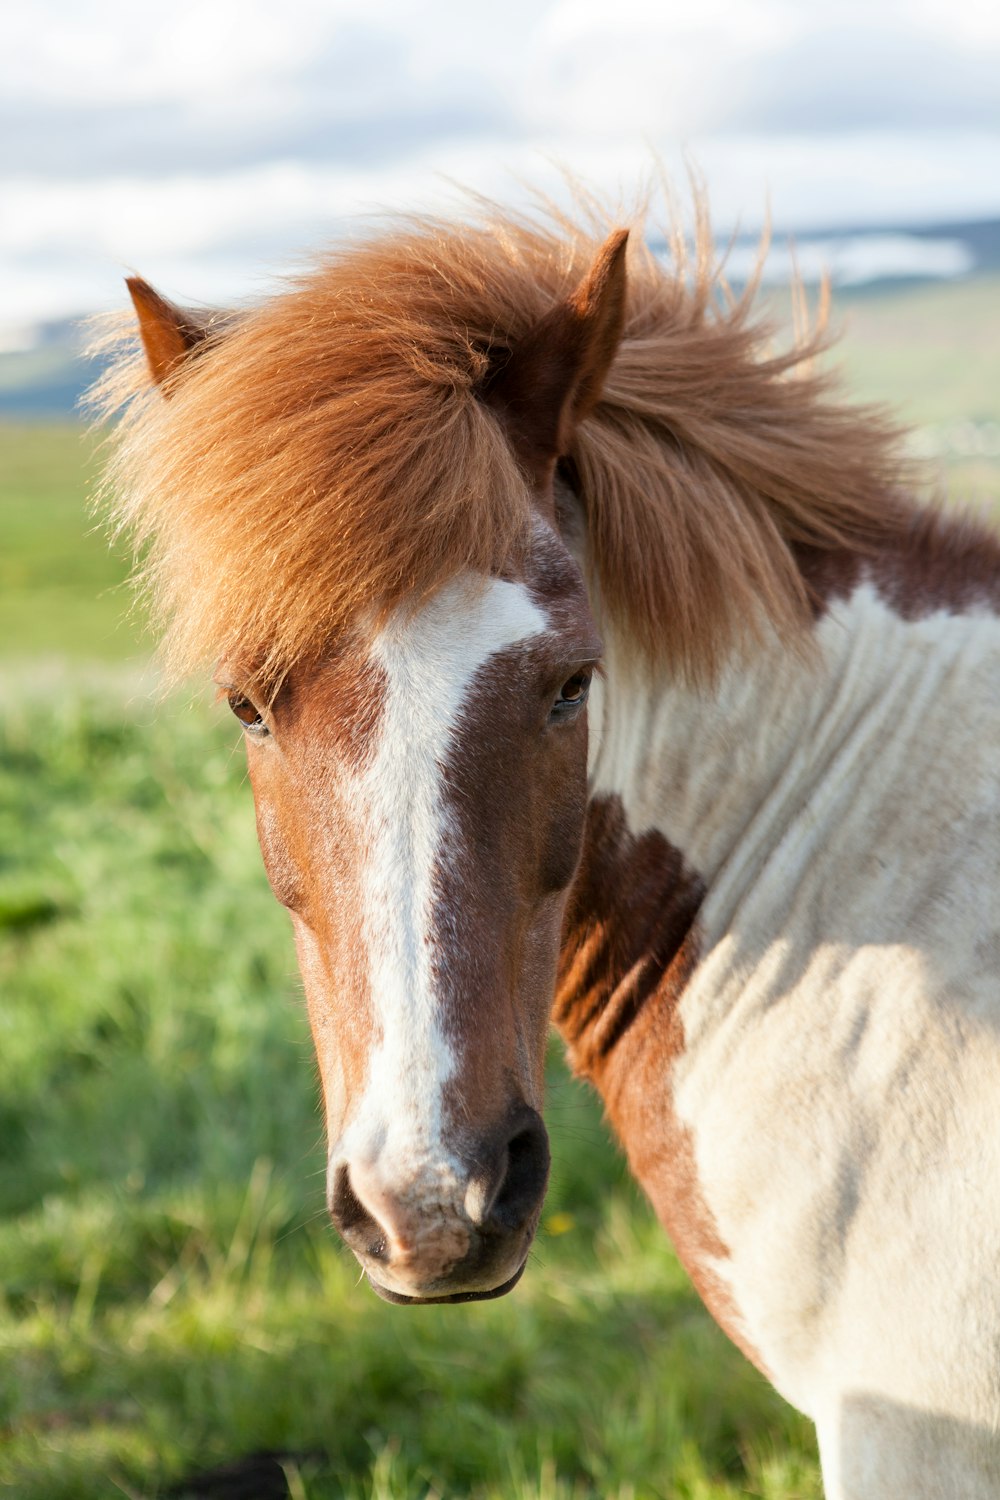 foto ravvicinata del muso del cavallo marrone e bianco